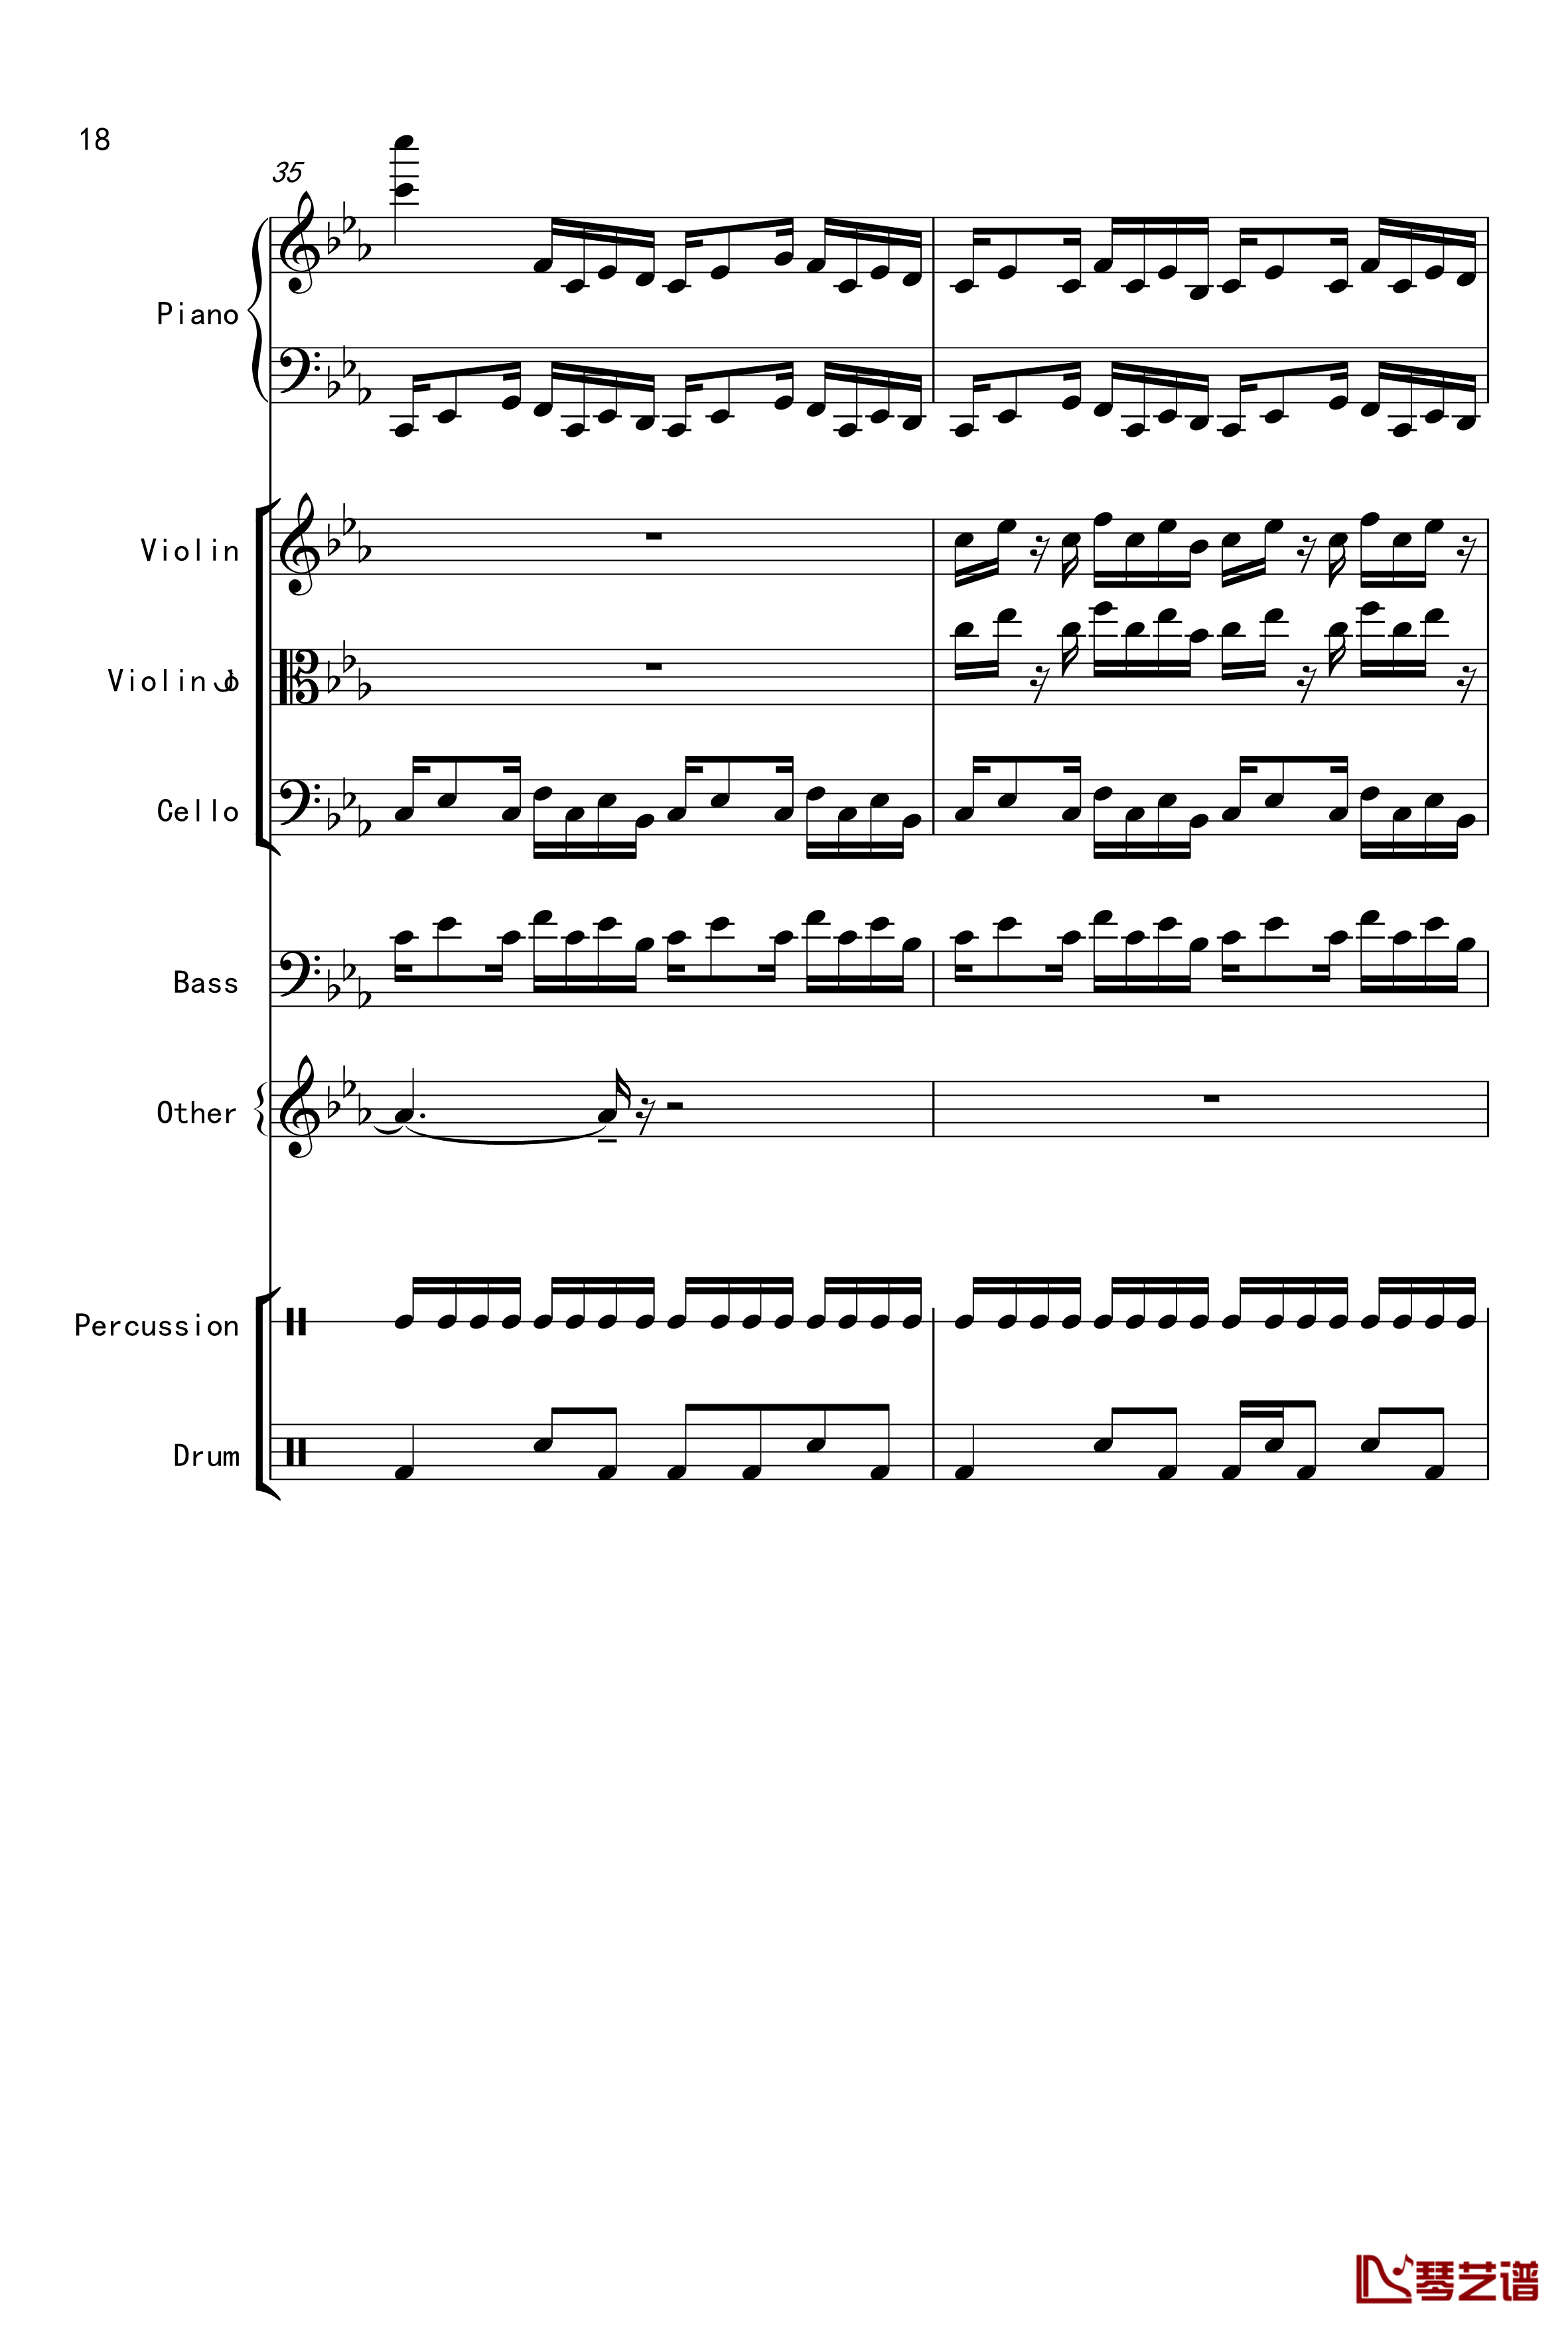 克罗地亚舞曲钢琴谱-Croatian Rhapsody-马克西姆-Maksim·Mrvica18